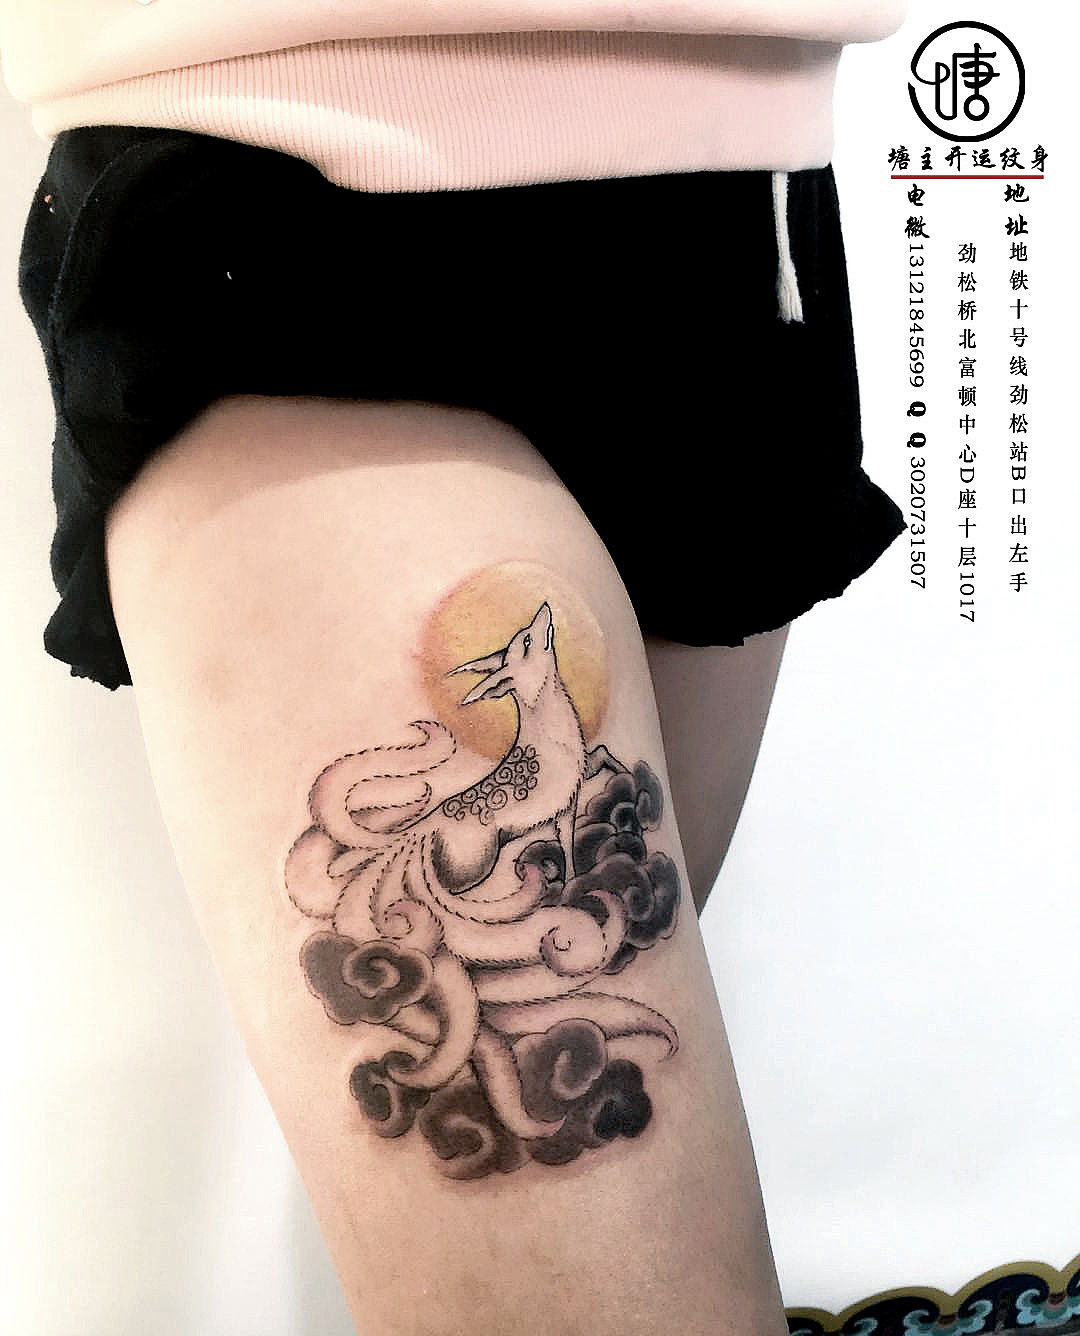 半胛龙纹身图案_上海纹身 上海纹身店 上海由龙纹身2号工作室